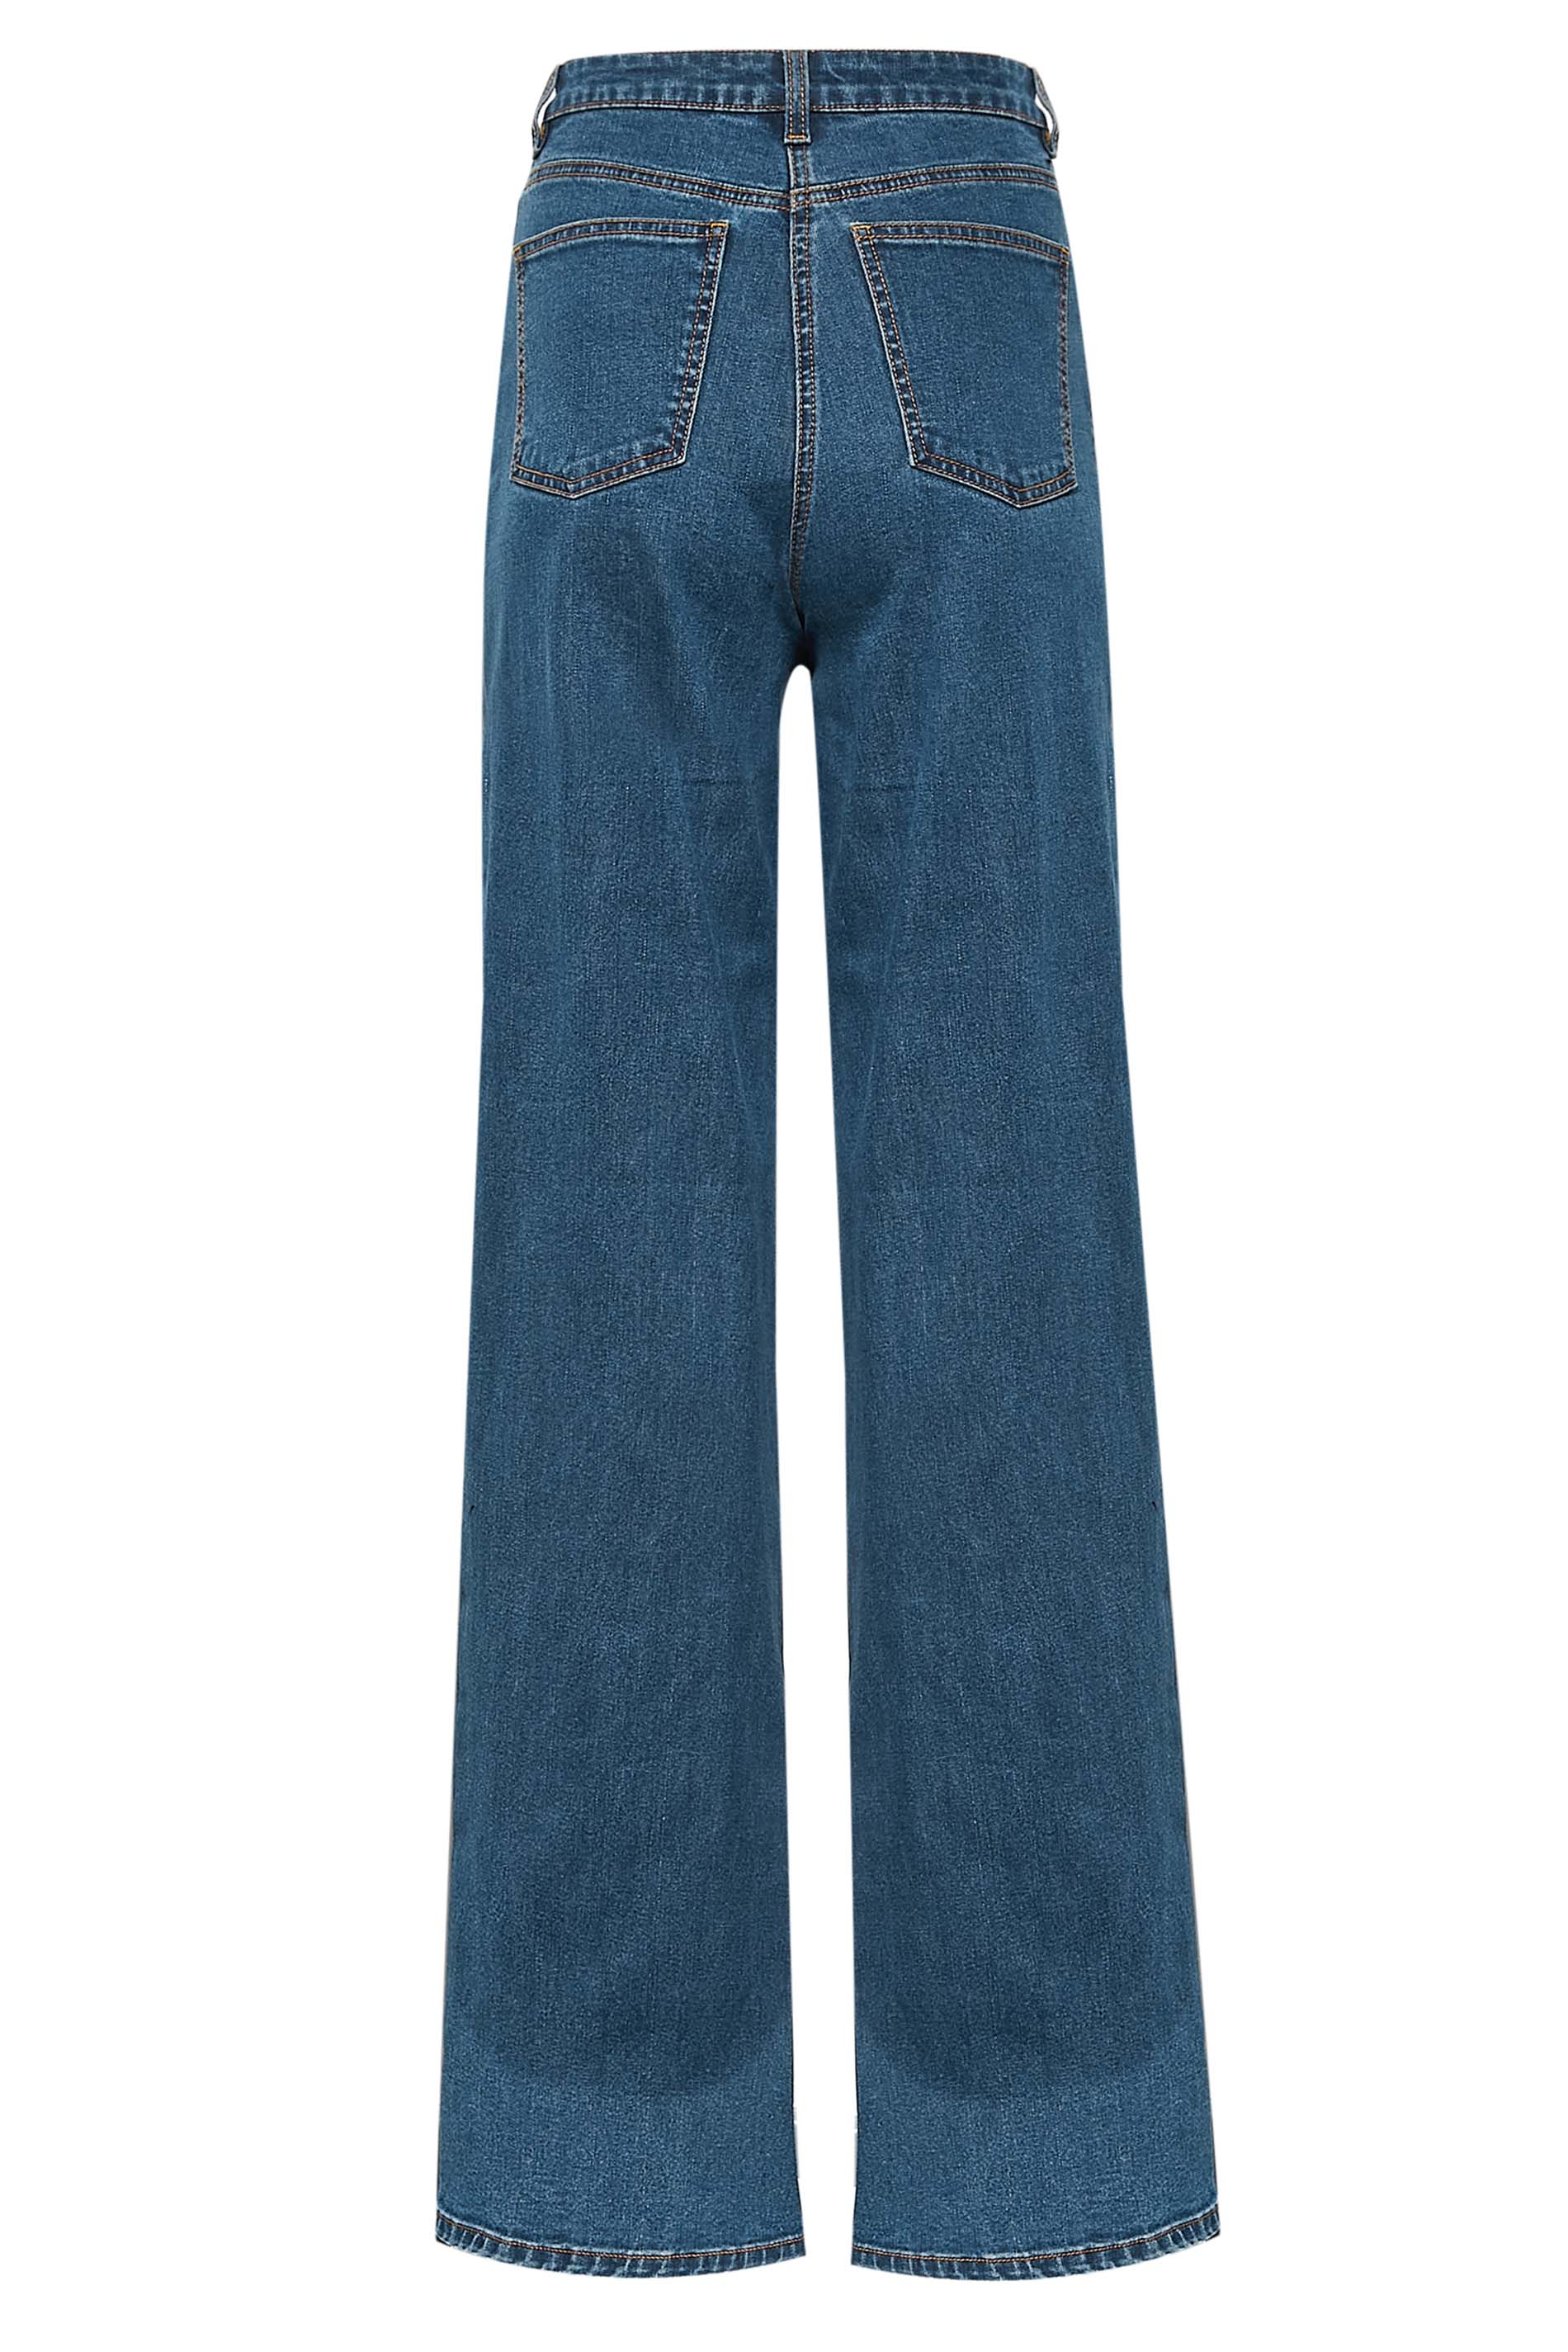 LTS Tall Indigo Blue BEA Wide Leg Jeans | Long Tall Sally